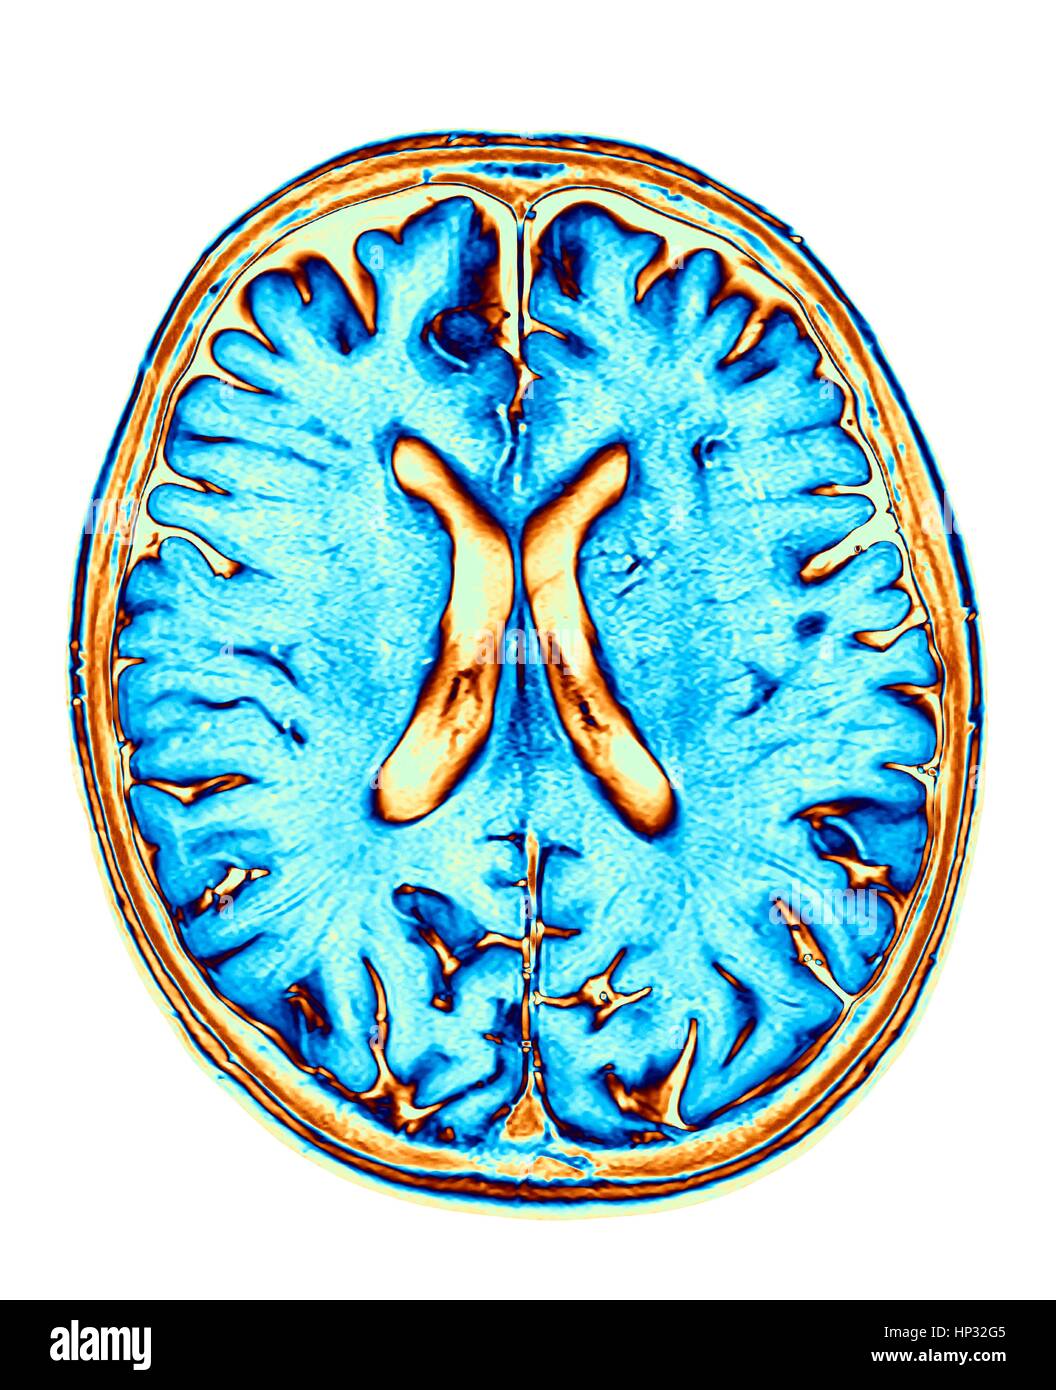 Cervello normale. Colorato di risonanza magnetica (RM) scansione di una sezione assiale attraverso un cervello sano, le immagini mostra la corteccia cerebrale e del ventricolo laterale (X-sagomato in medio). Foto Stock